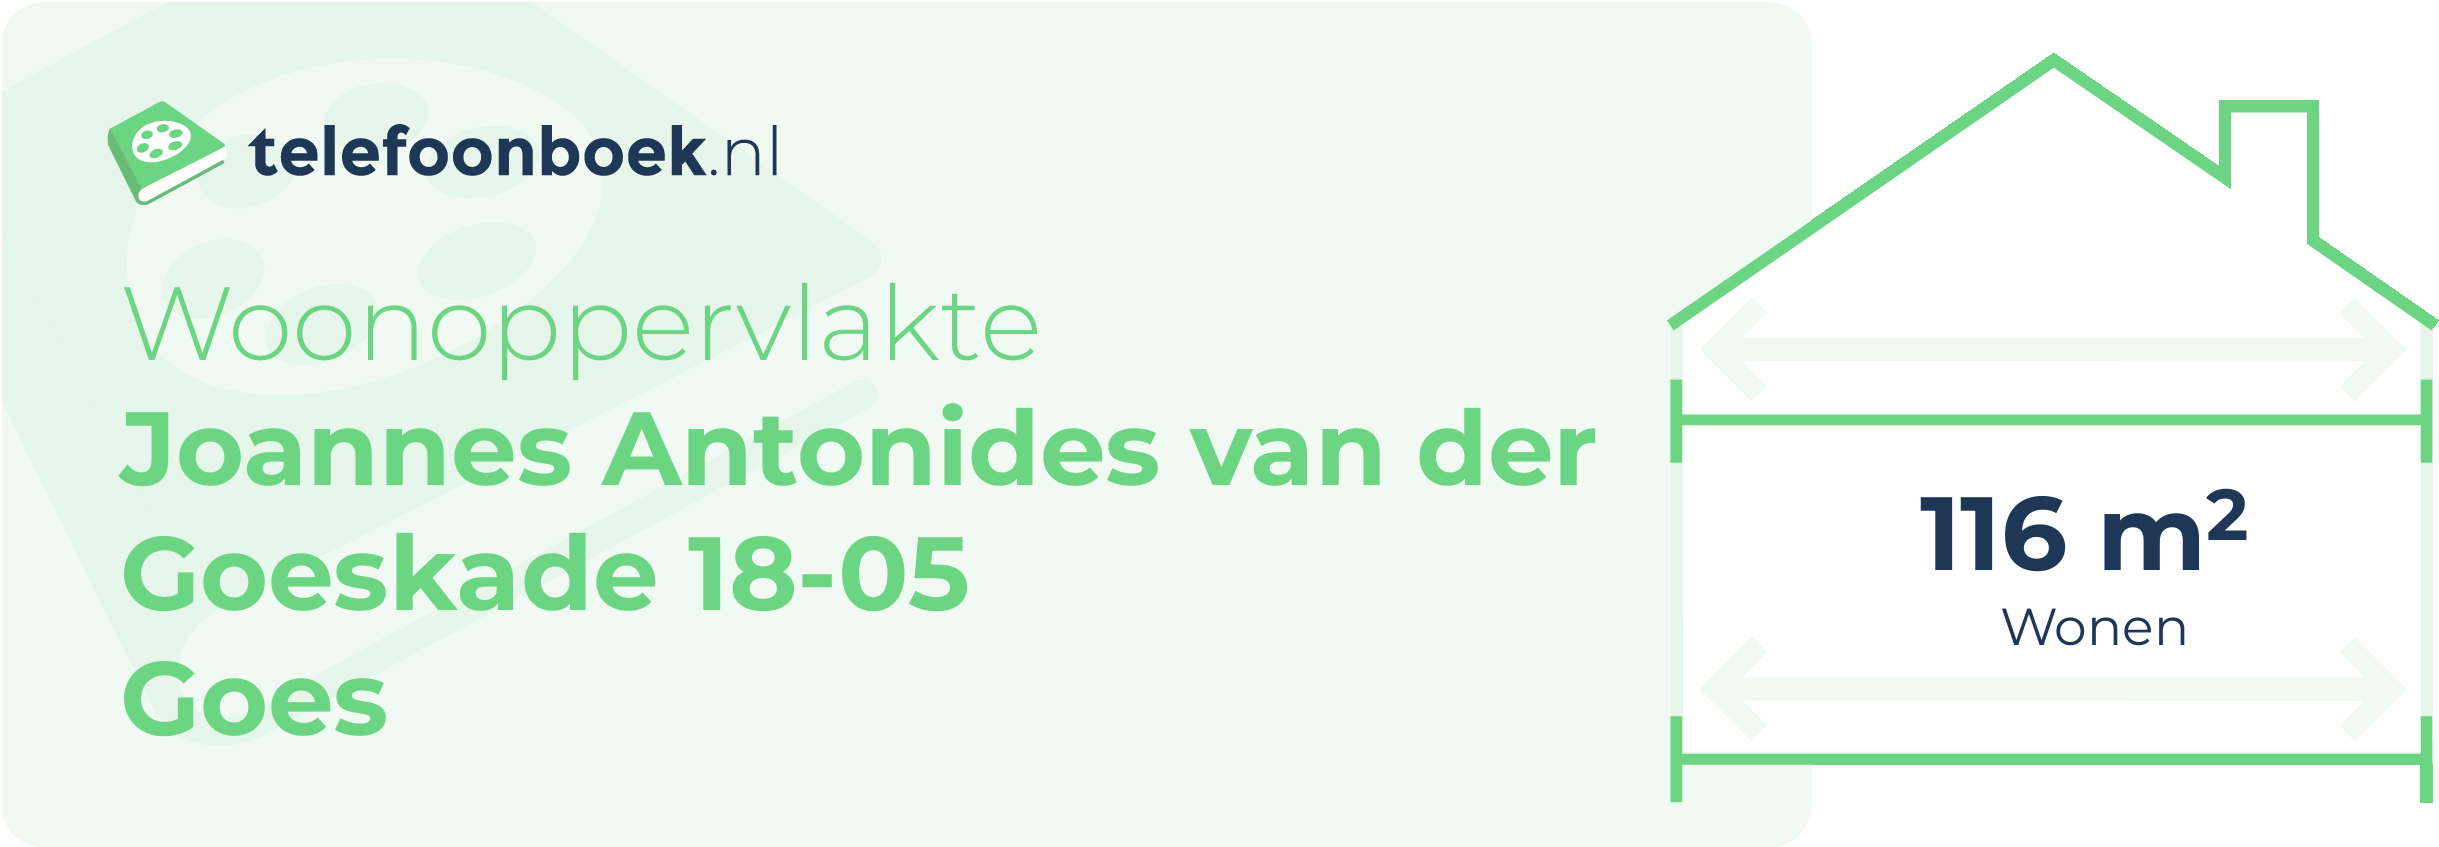 Woonoppervlakte Joannes Antonides Van Der Goeskade 18-05 Goes